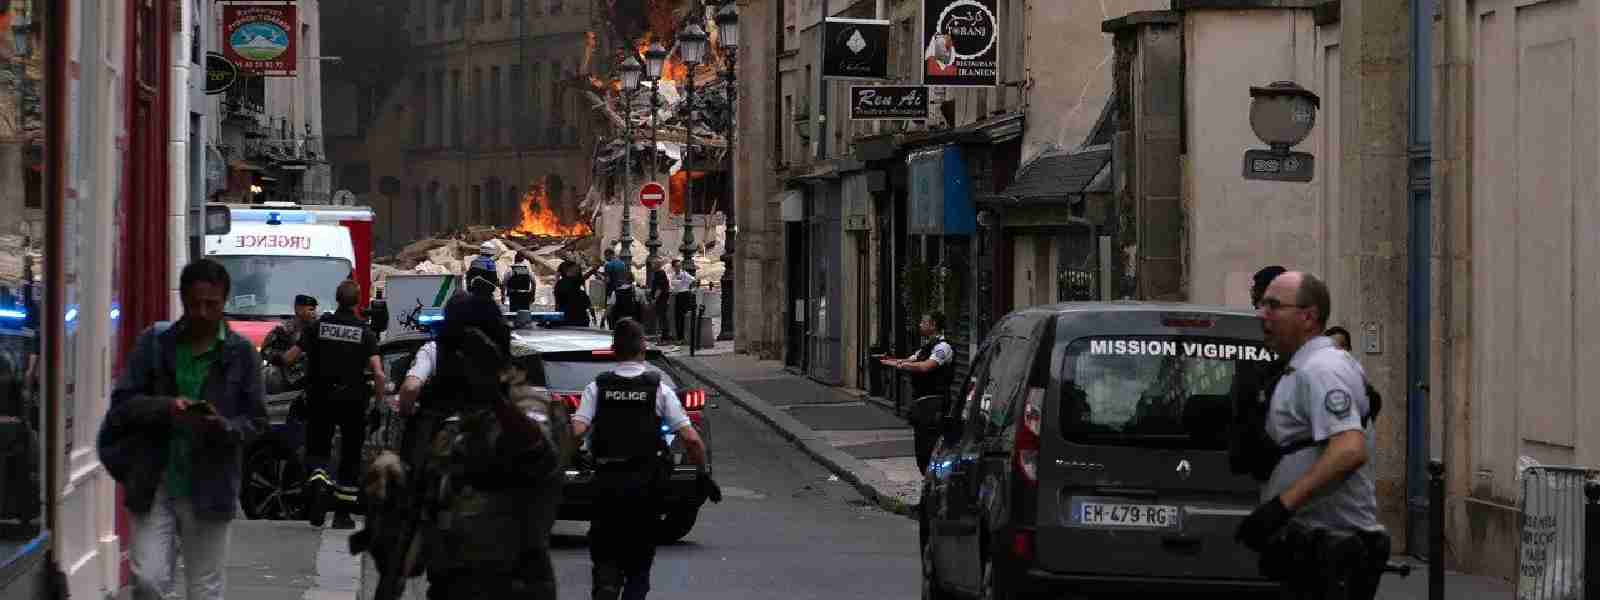 Dozens injured in Paris after gas explosion